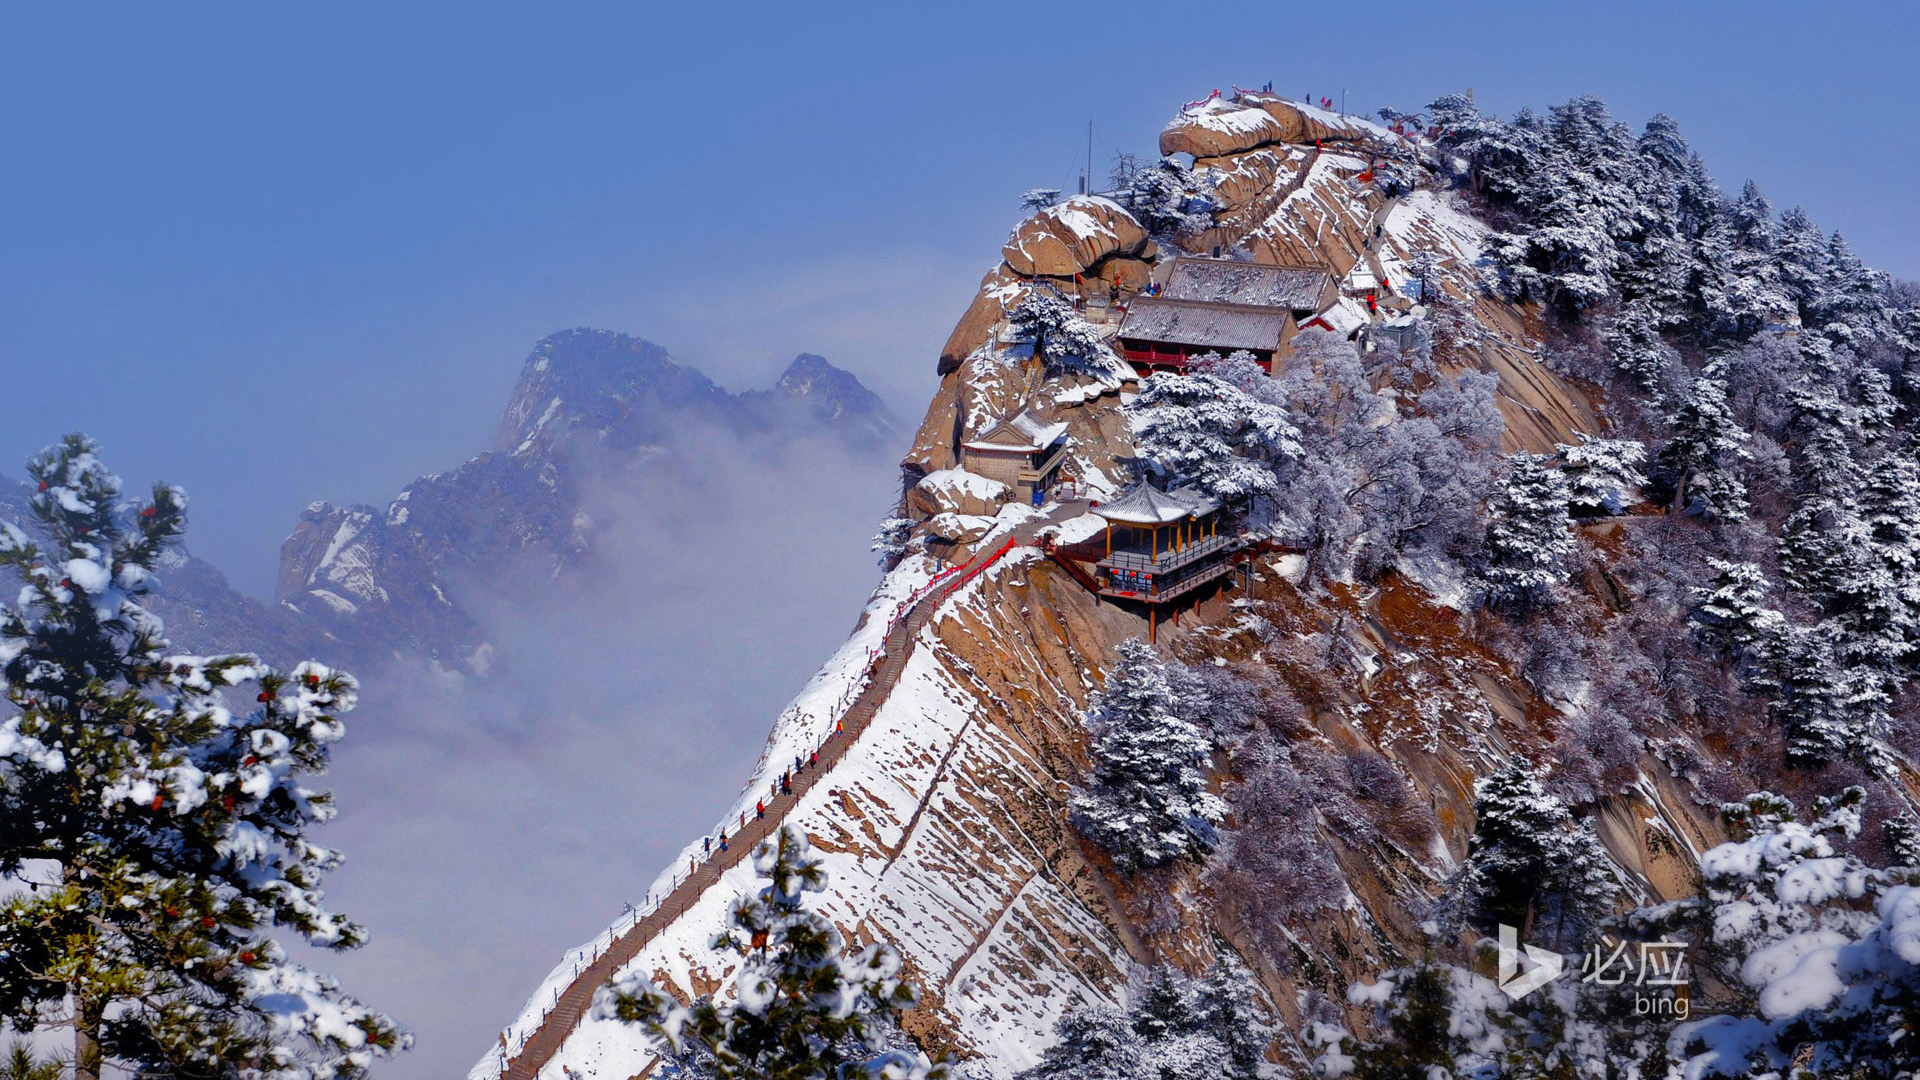 雪中华山,险峰之美,华山雪景风景桌面壁纸